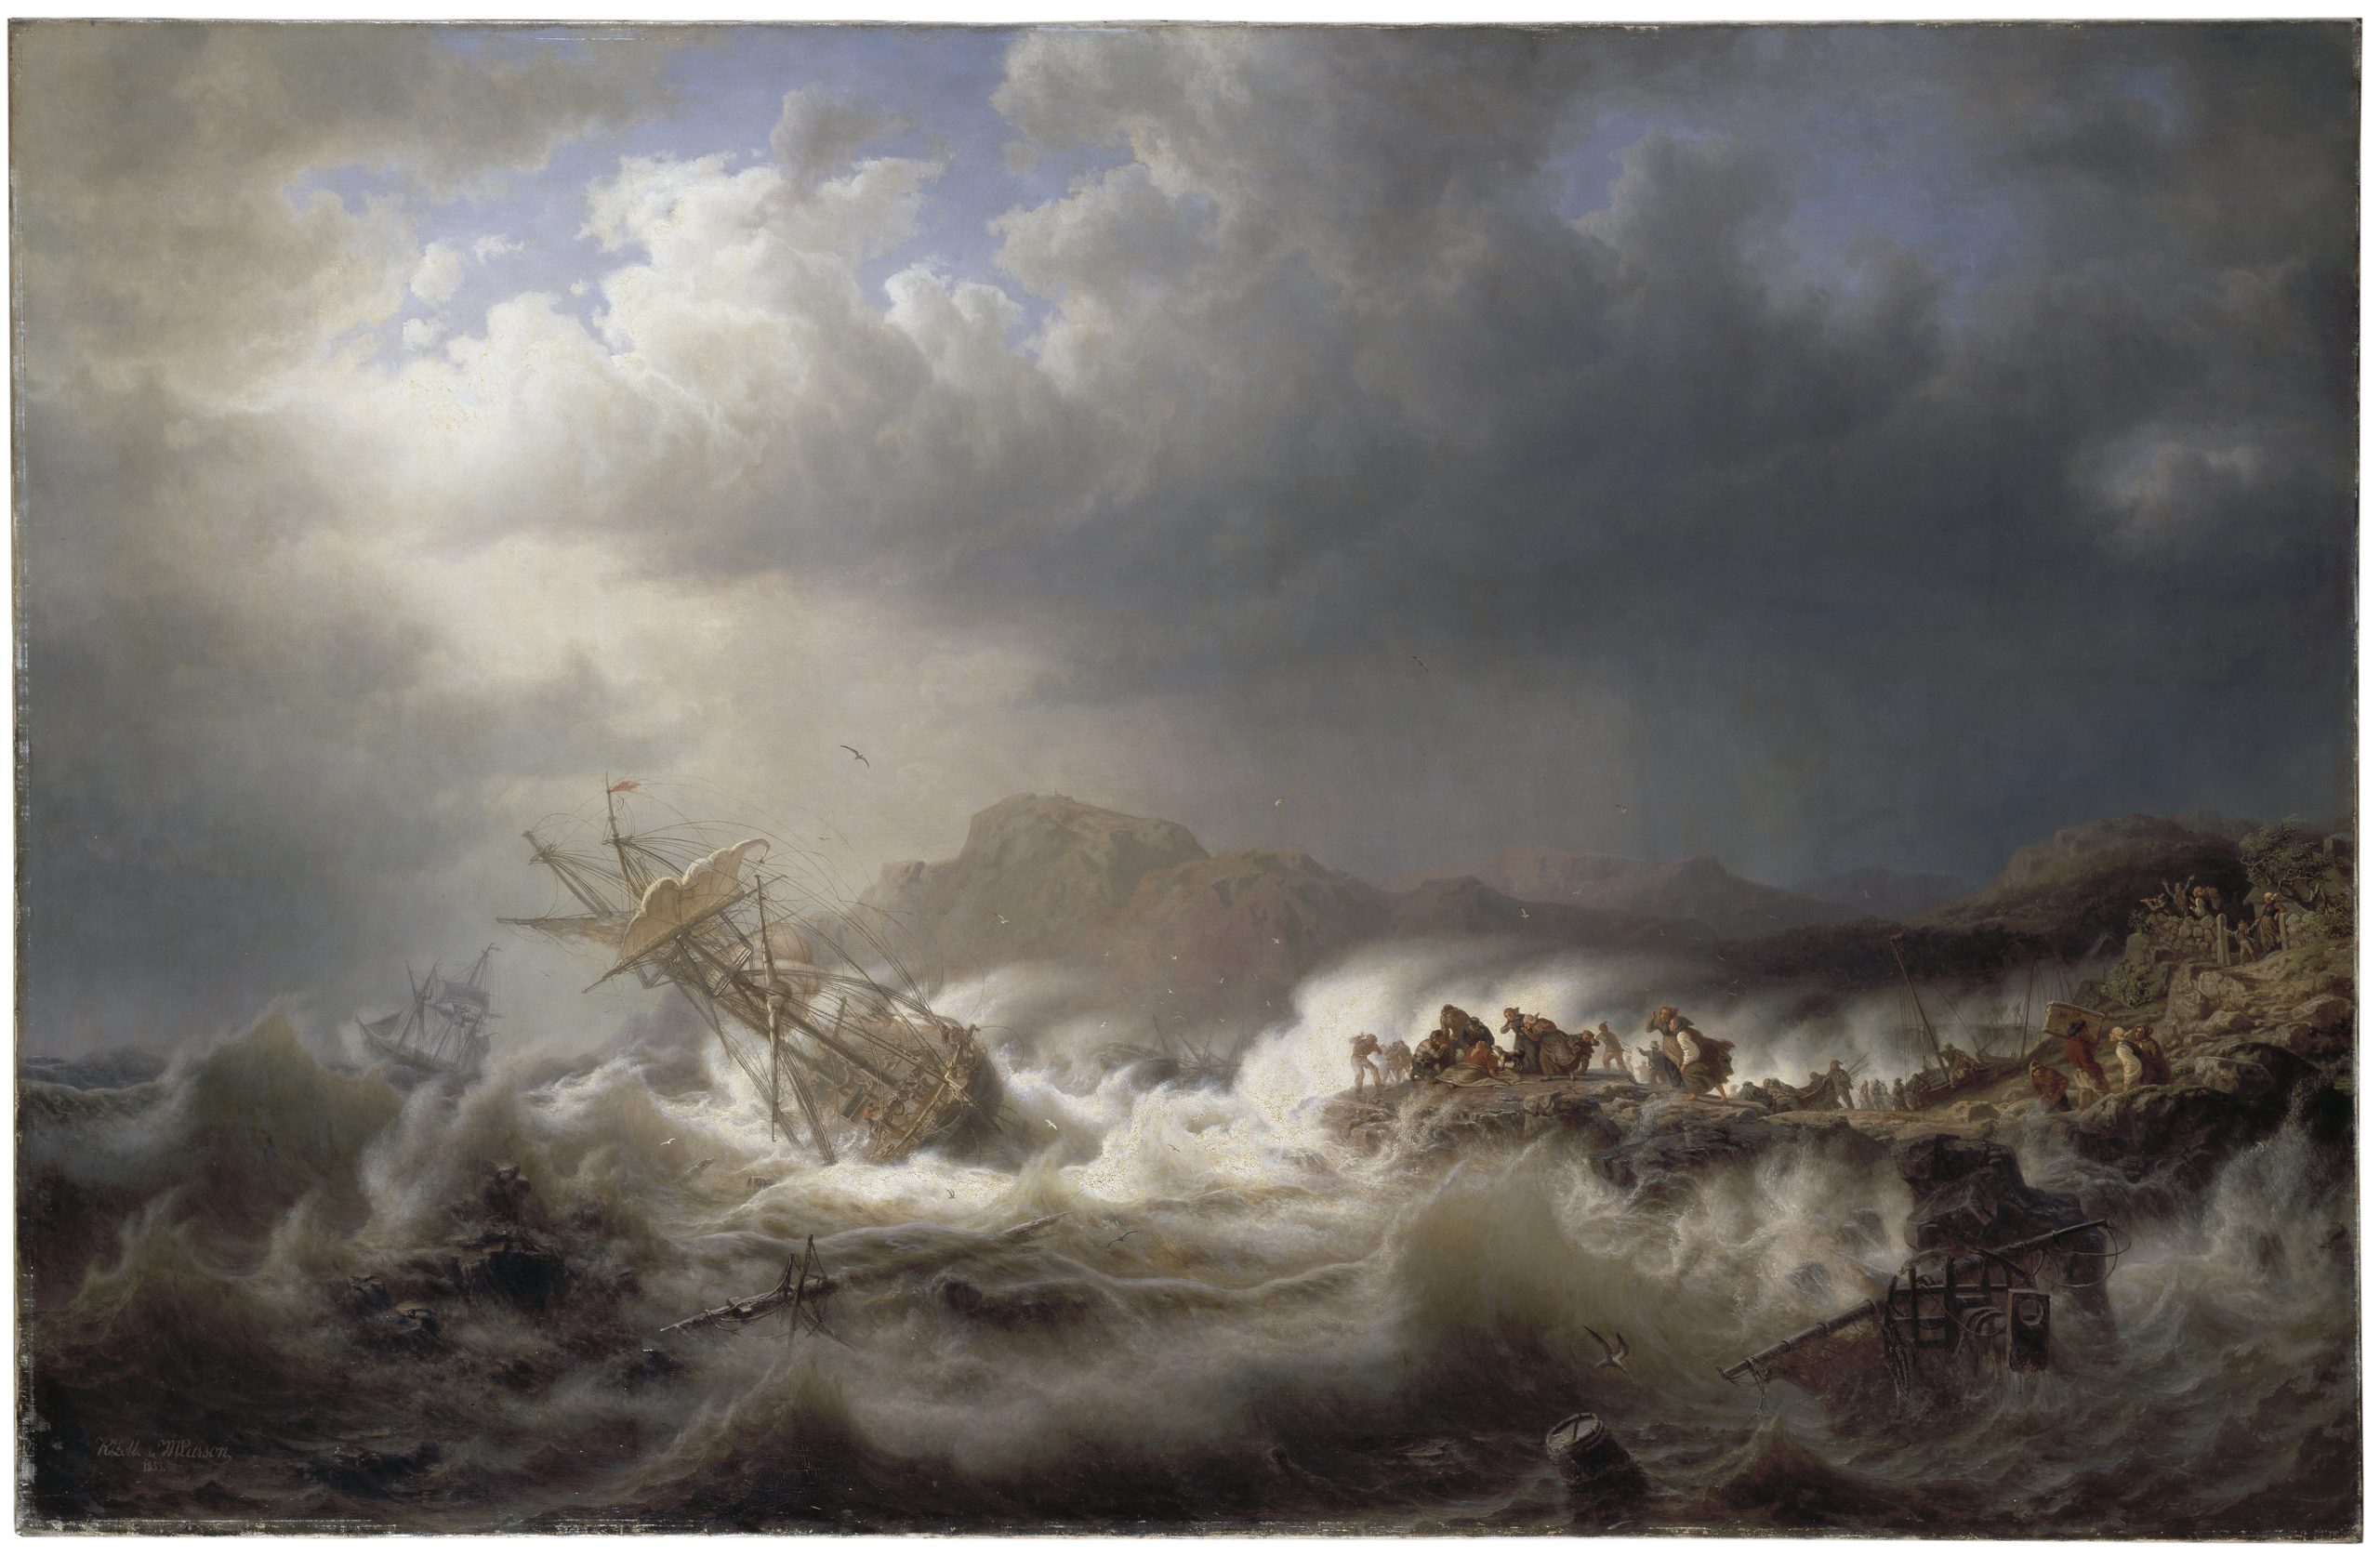 Oljemålning. Stormigt hav med ett övergivet lutande skepp. På en klippa intill räddar ett tiotal kvinnor och män de skeppsbrutna sjömännen.